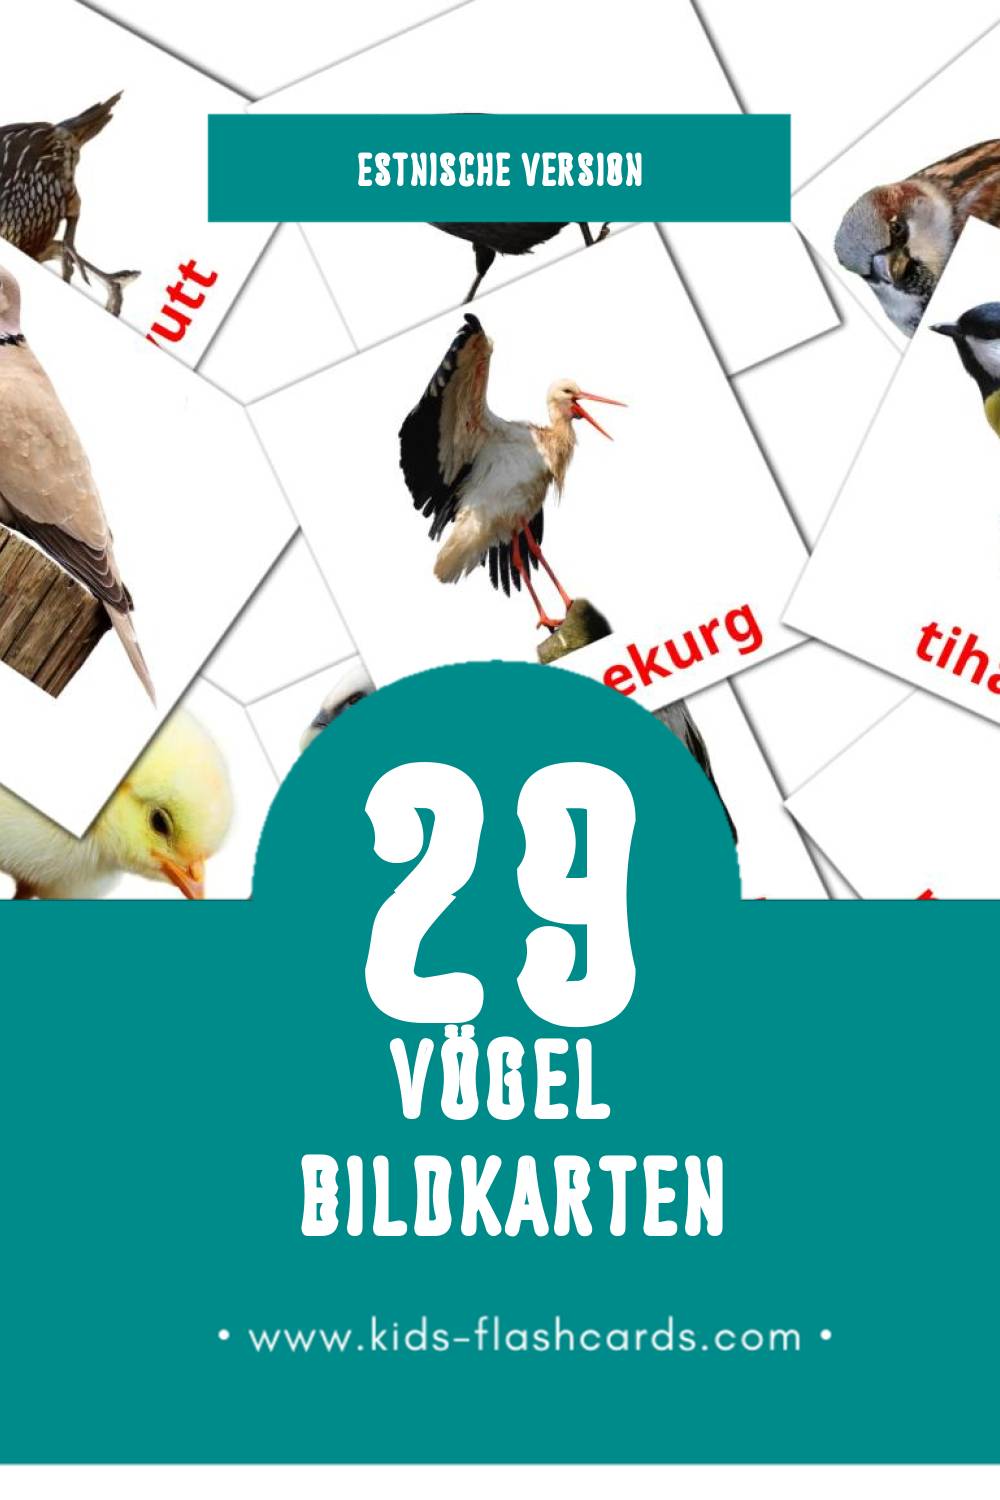 Visual LINNUD Flashcards für Kleinkinder (29 Karten in Estnisch)